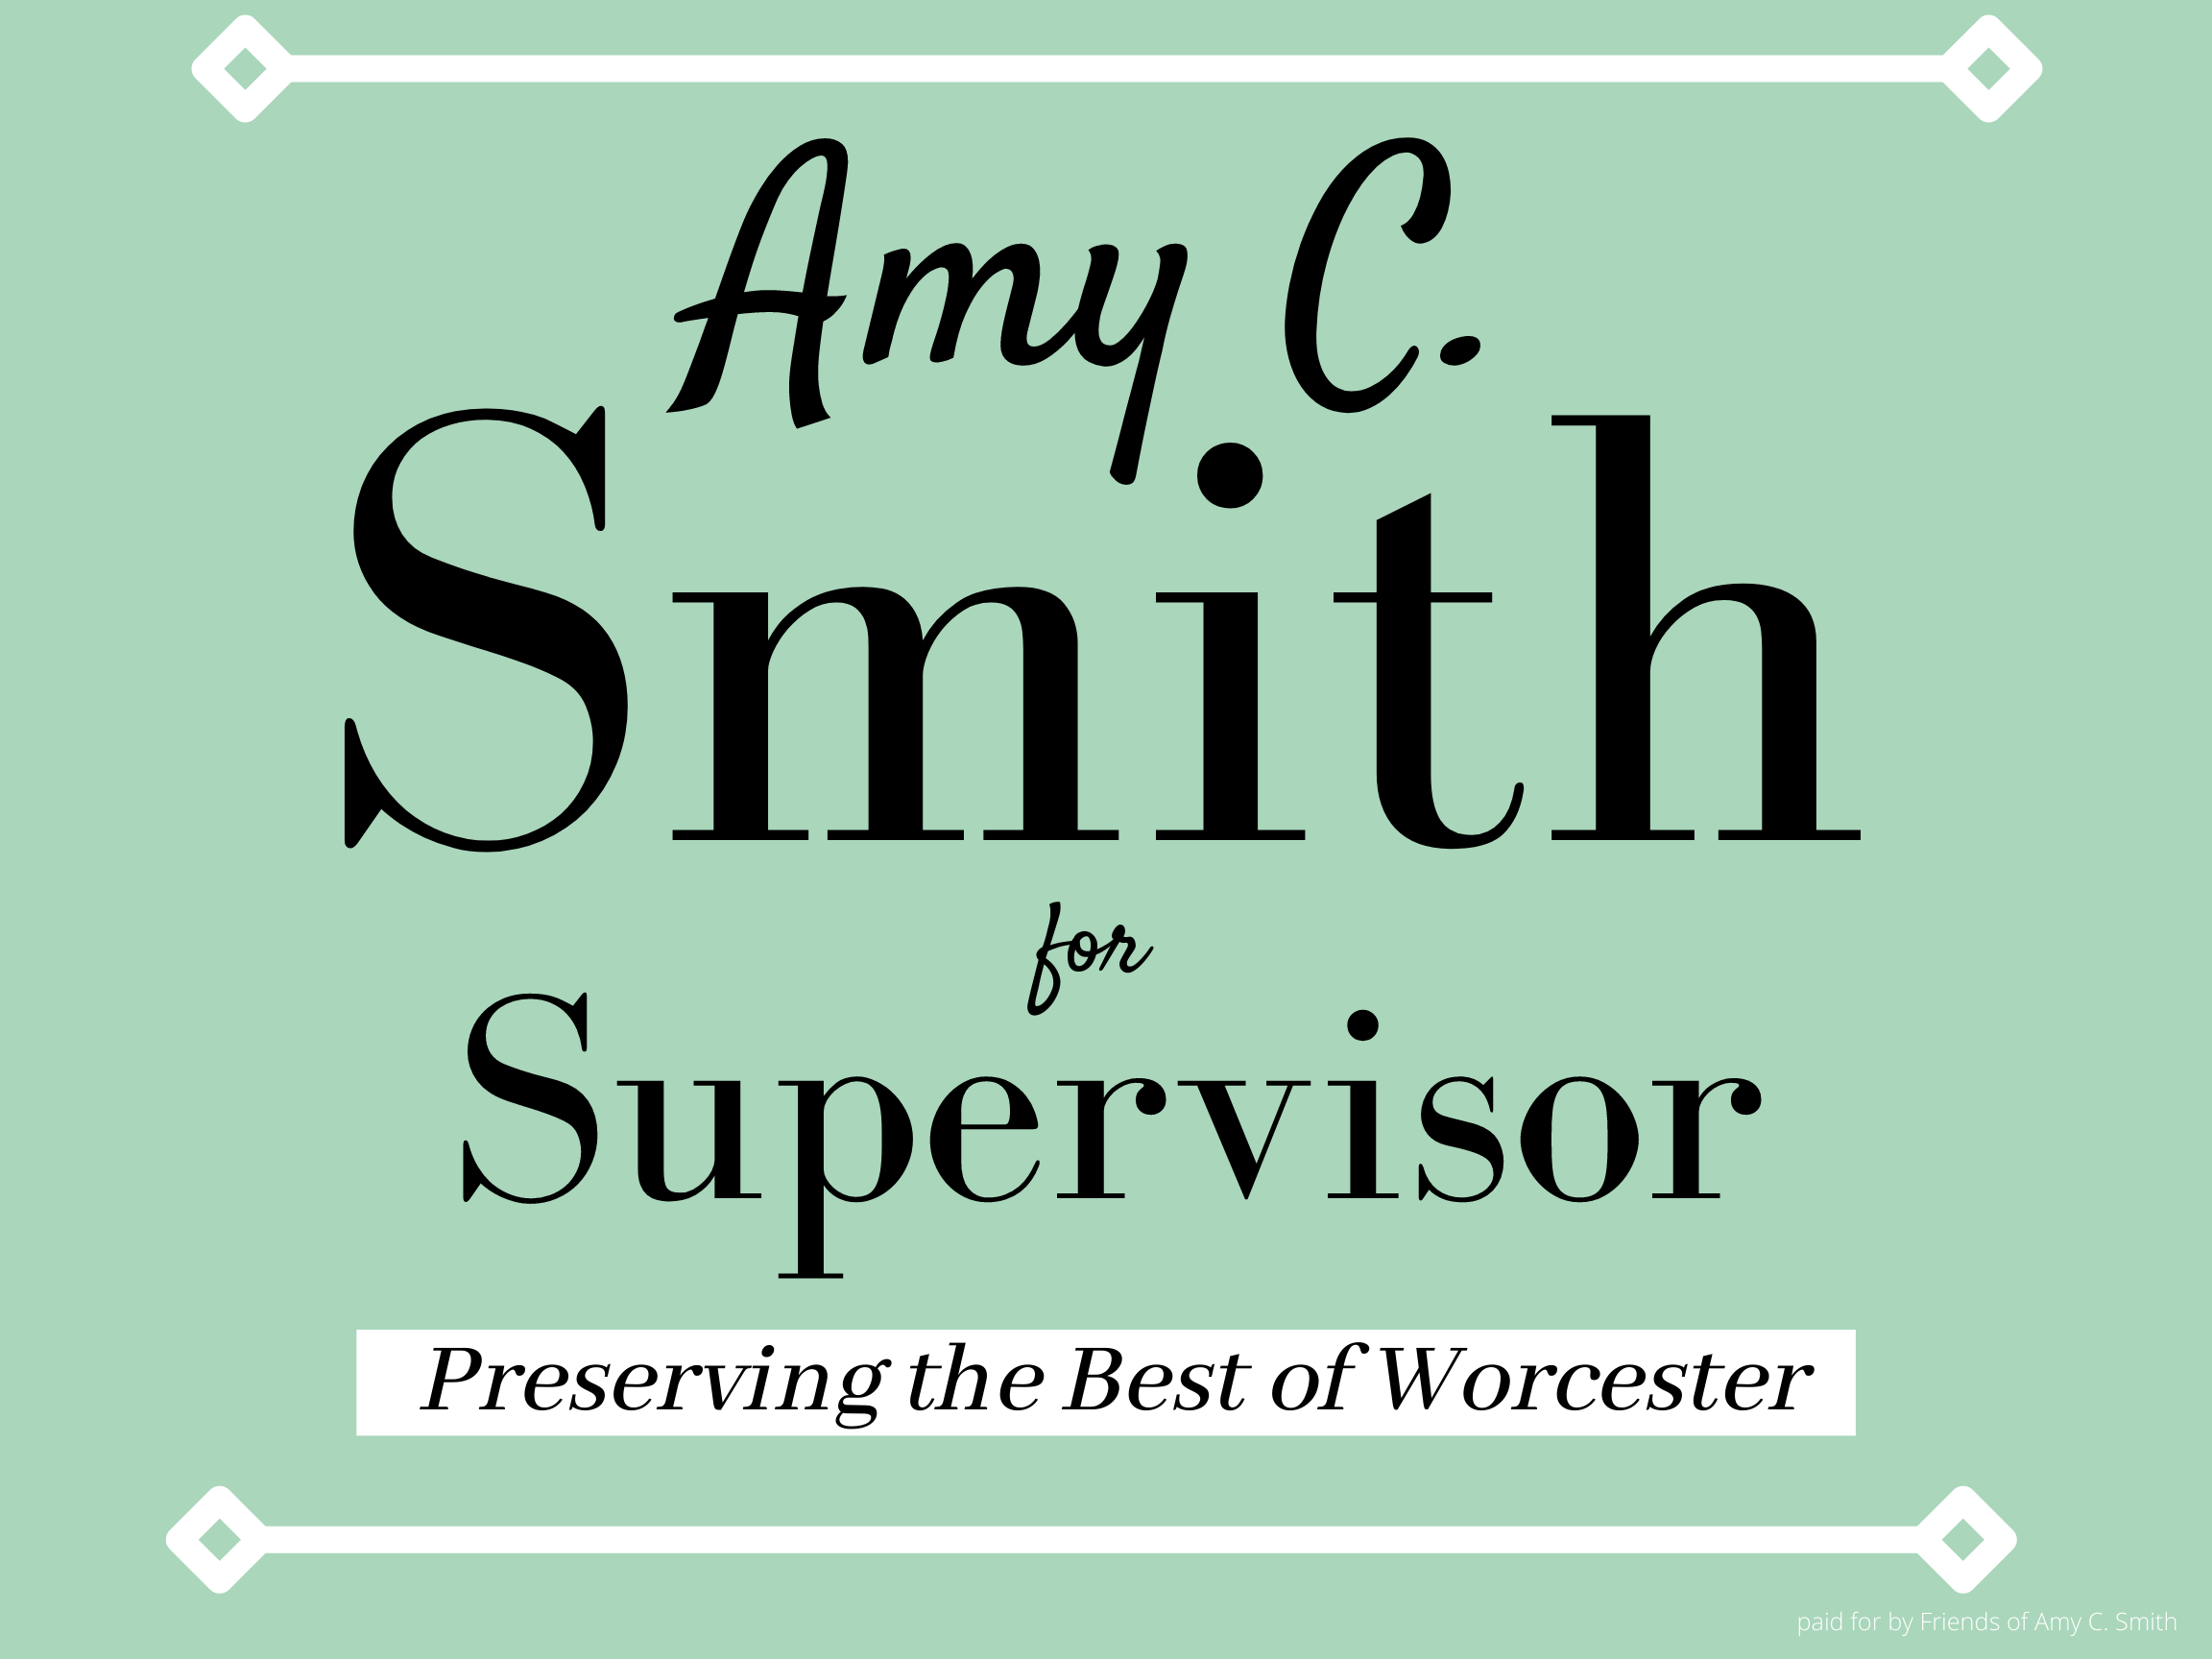 Friends of Amy C. Smith logo